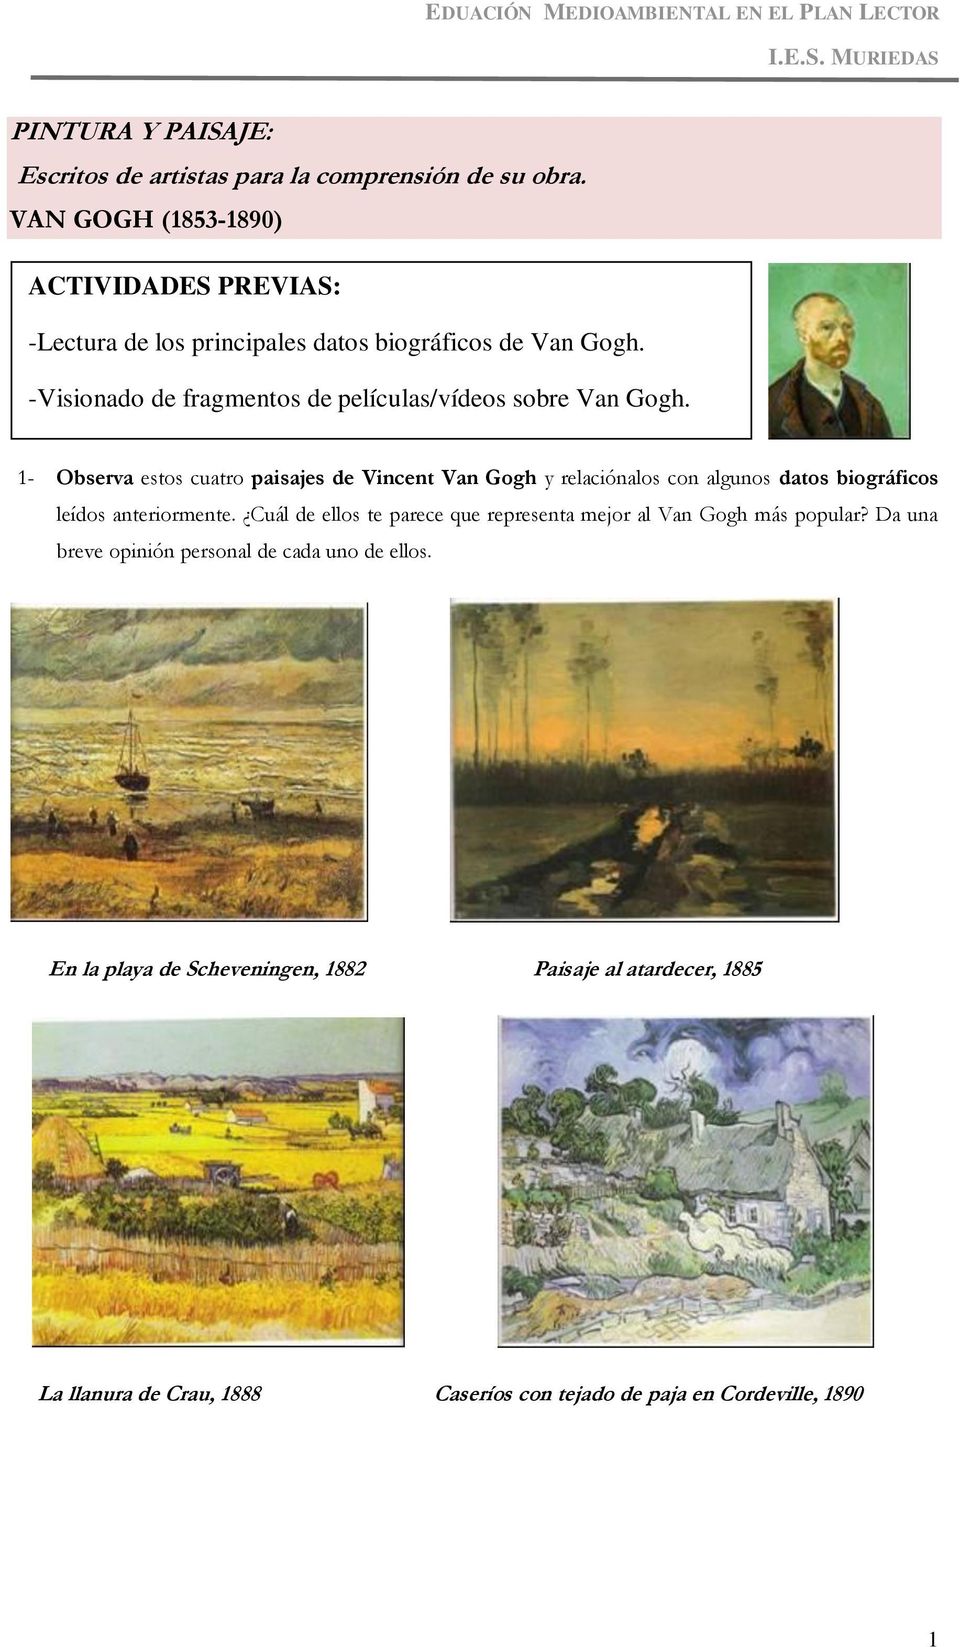 -Recorrido visual de paisajes de Van Gogh previamente 1- Observa estos cuatro paisajes de Vincent Van Gogh y relaciónalos con algunos datos biográficos seleccionados.